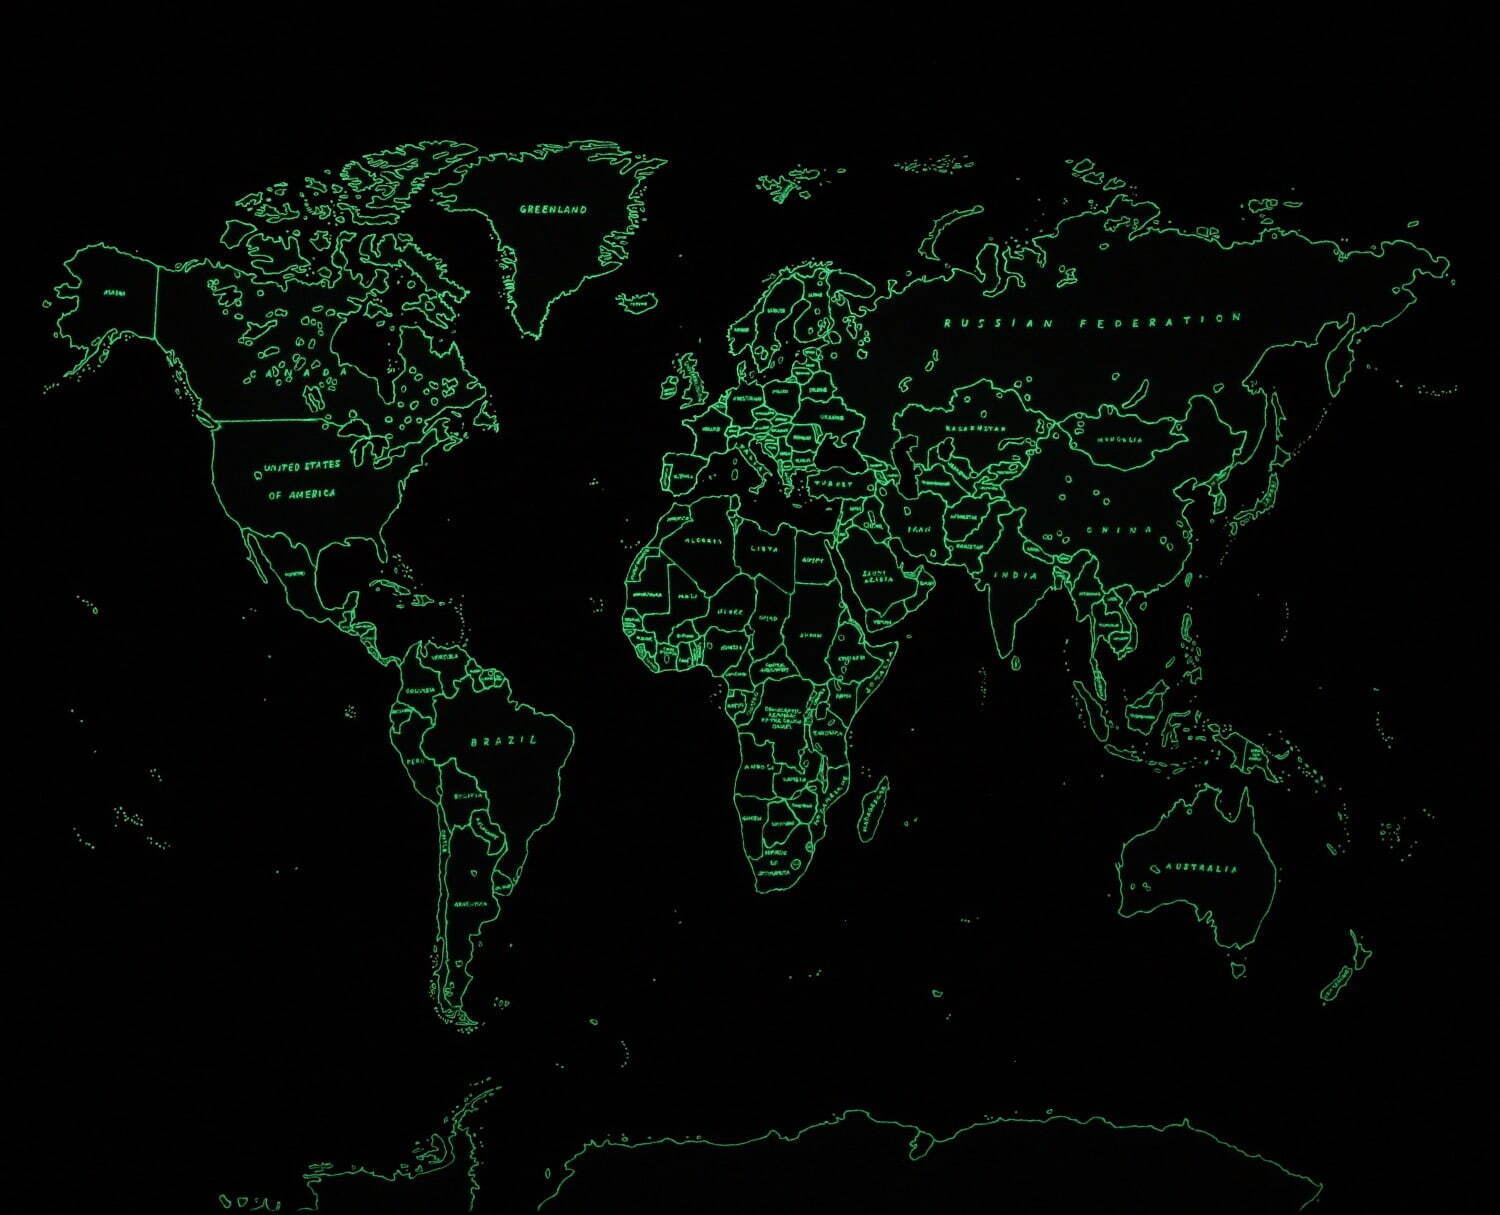 青山悟 《Map of The World (Dedicated to unknown Embroiderers)》 2014年
ポリエステルにポリエステル糸と蓄光糸で刺繍 野村道子(ワイルドスミス美術館)蔵
撮影：宮島径 © AOYAMA Satoru, Courtesy of Mizuma Art Gallery